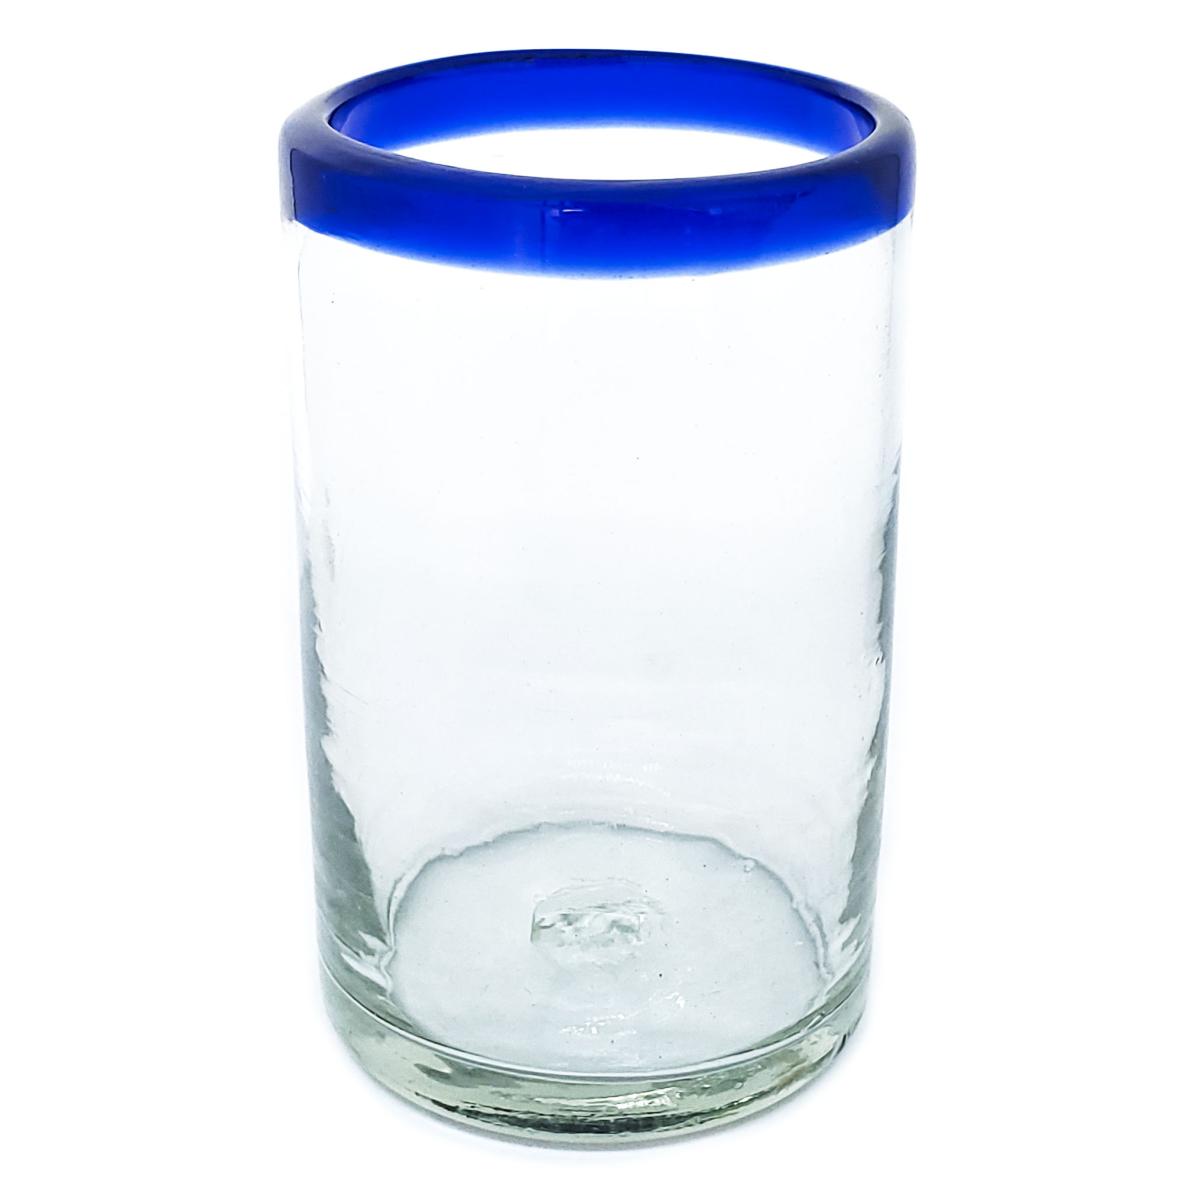 VIDRIO SOPLADO / Juego de 6 vasos grandes con borde azul cobalto / stos artesanales vasos le darn un toque clsico a su bebida favorita.